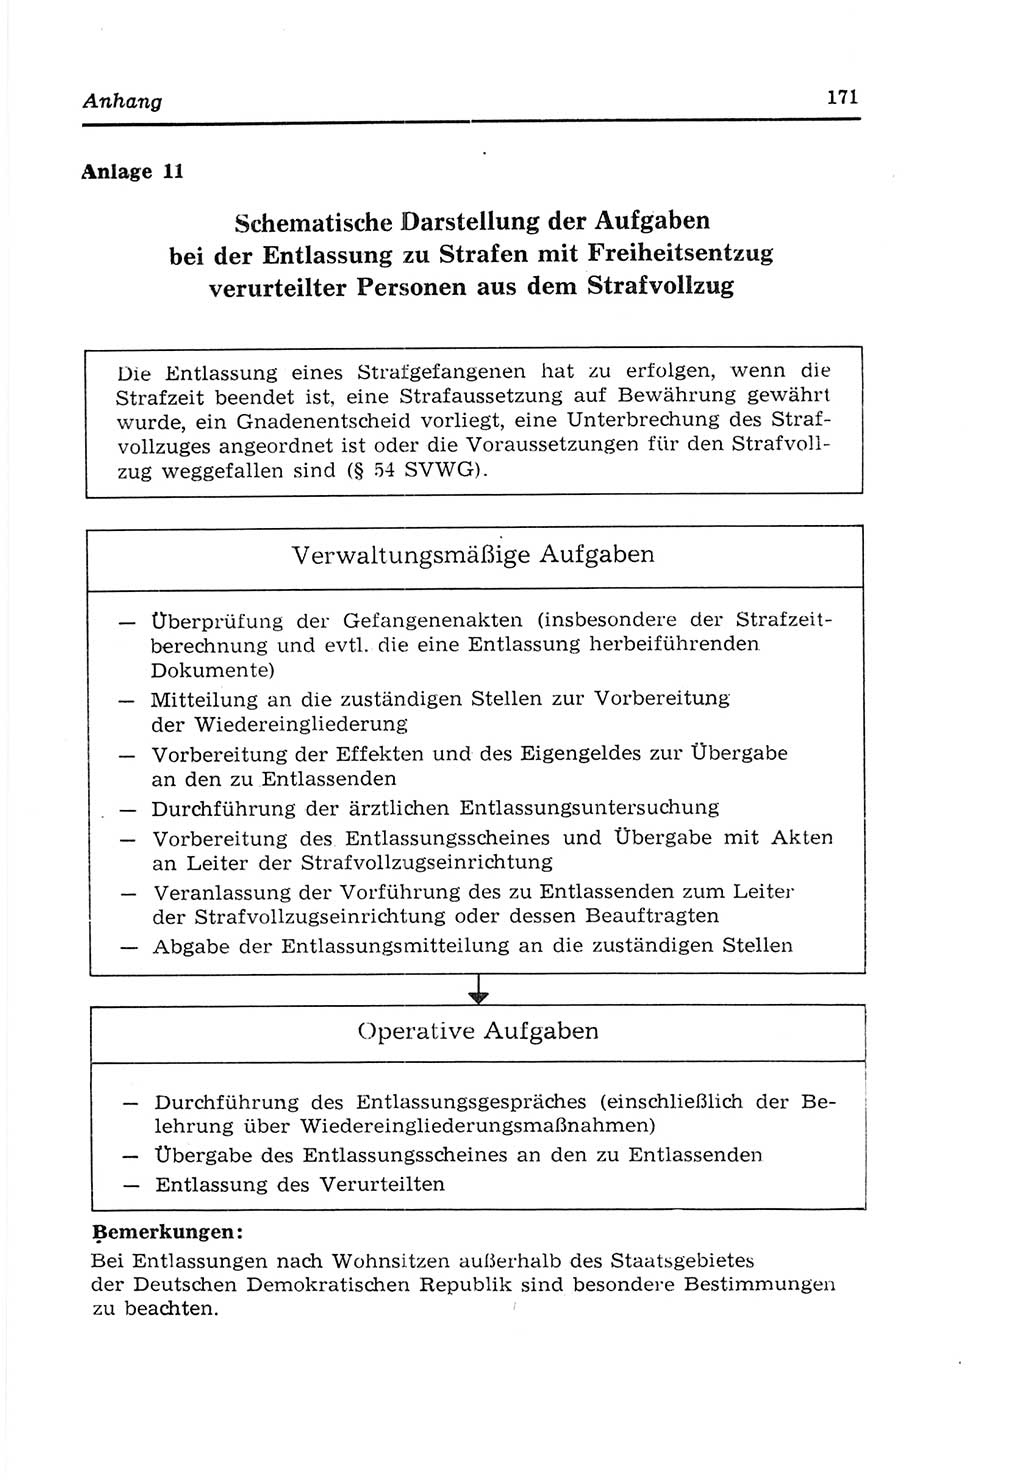 Strafvollzugs- und Wiedereingliederungsgesetz (SVWG) der Deutschen Demokratischen Republik (DDR) 1968, Seite 171 (SVWG DDR 1968, S. 171)